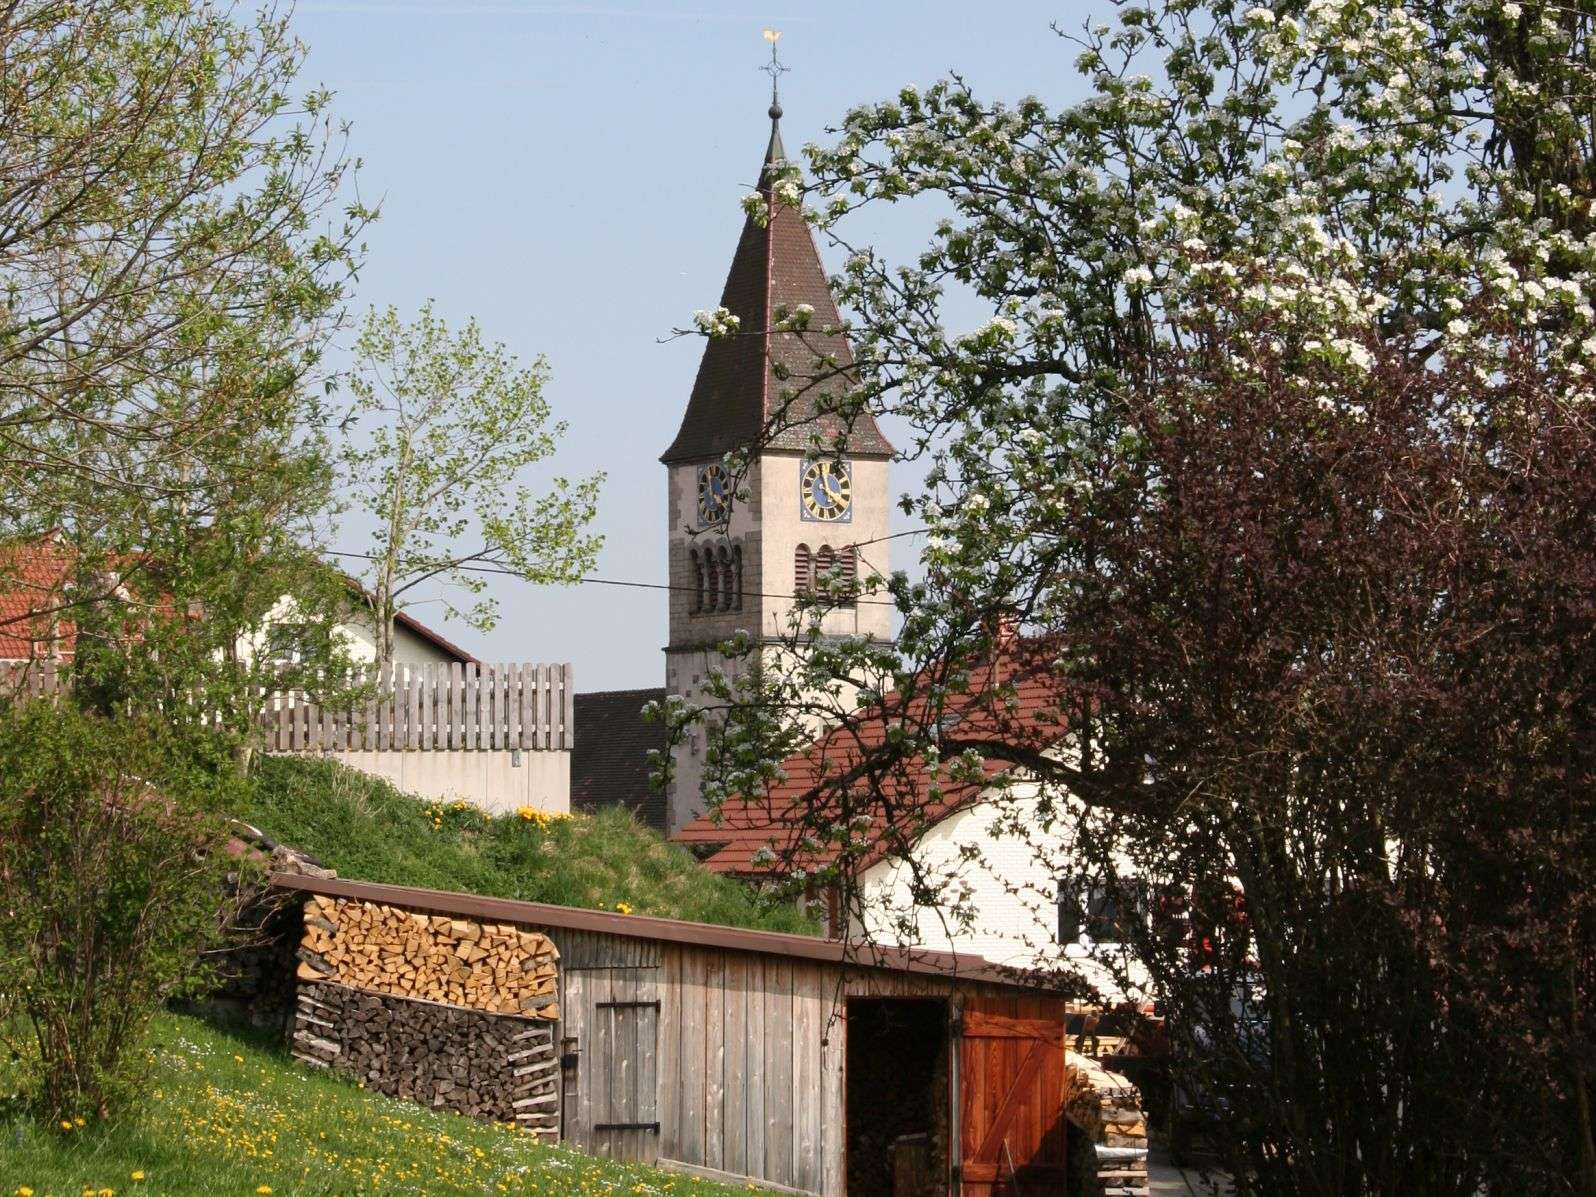 Göschweiler